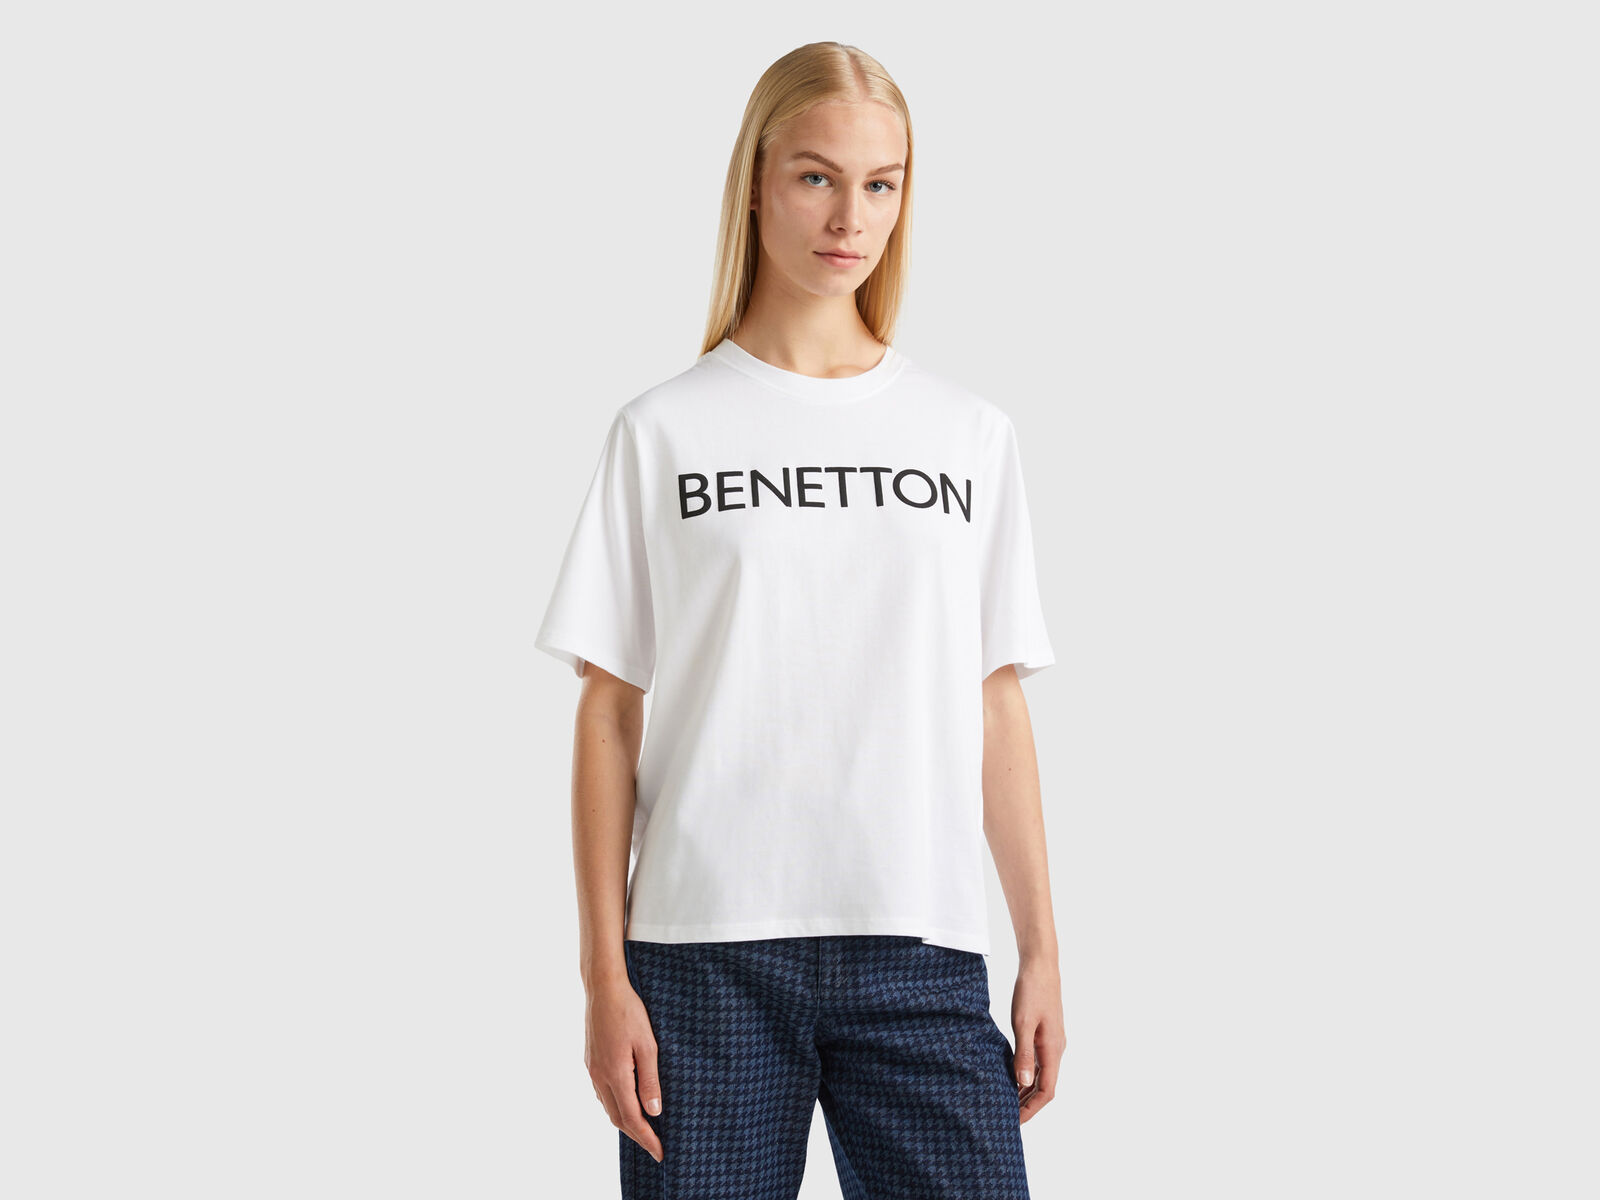 Benetton with T-shirt text - White logo |